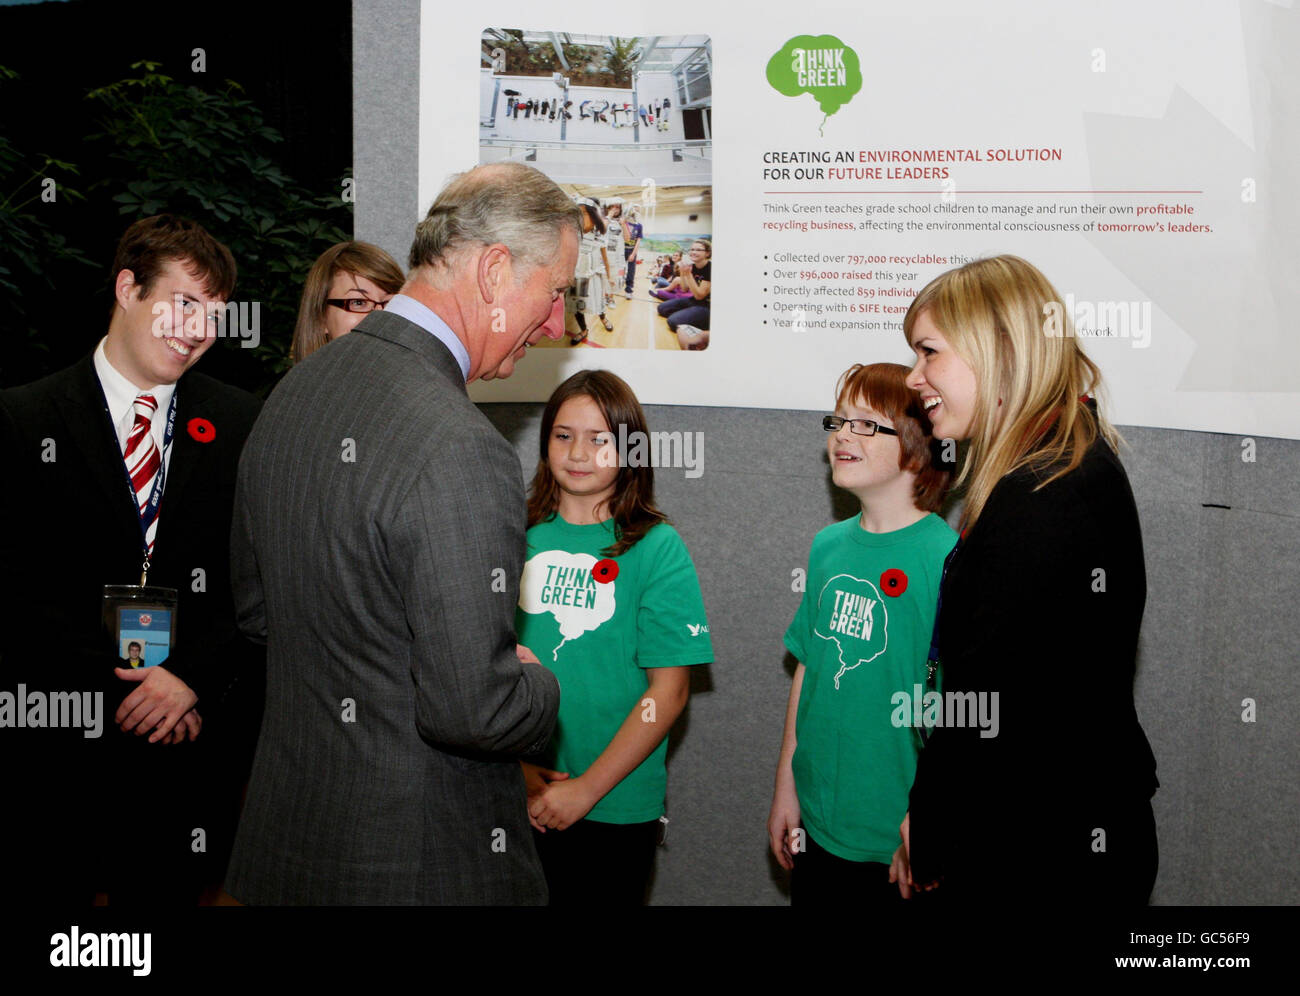 Il Principe del Galles incontra gli studenti locali durante la sua visita al Marine Institute nella città di St John's in Canada. Foto Stock